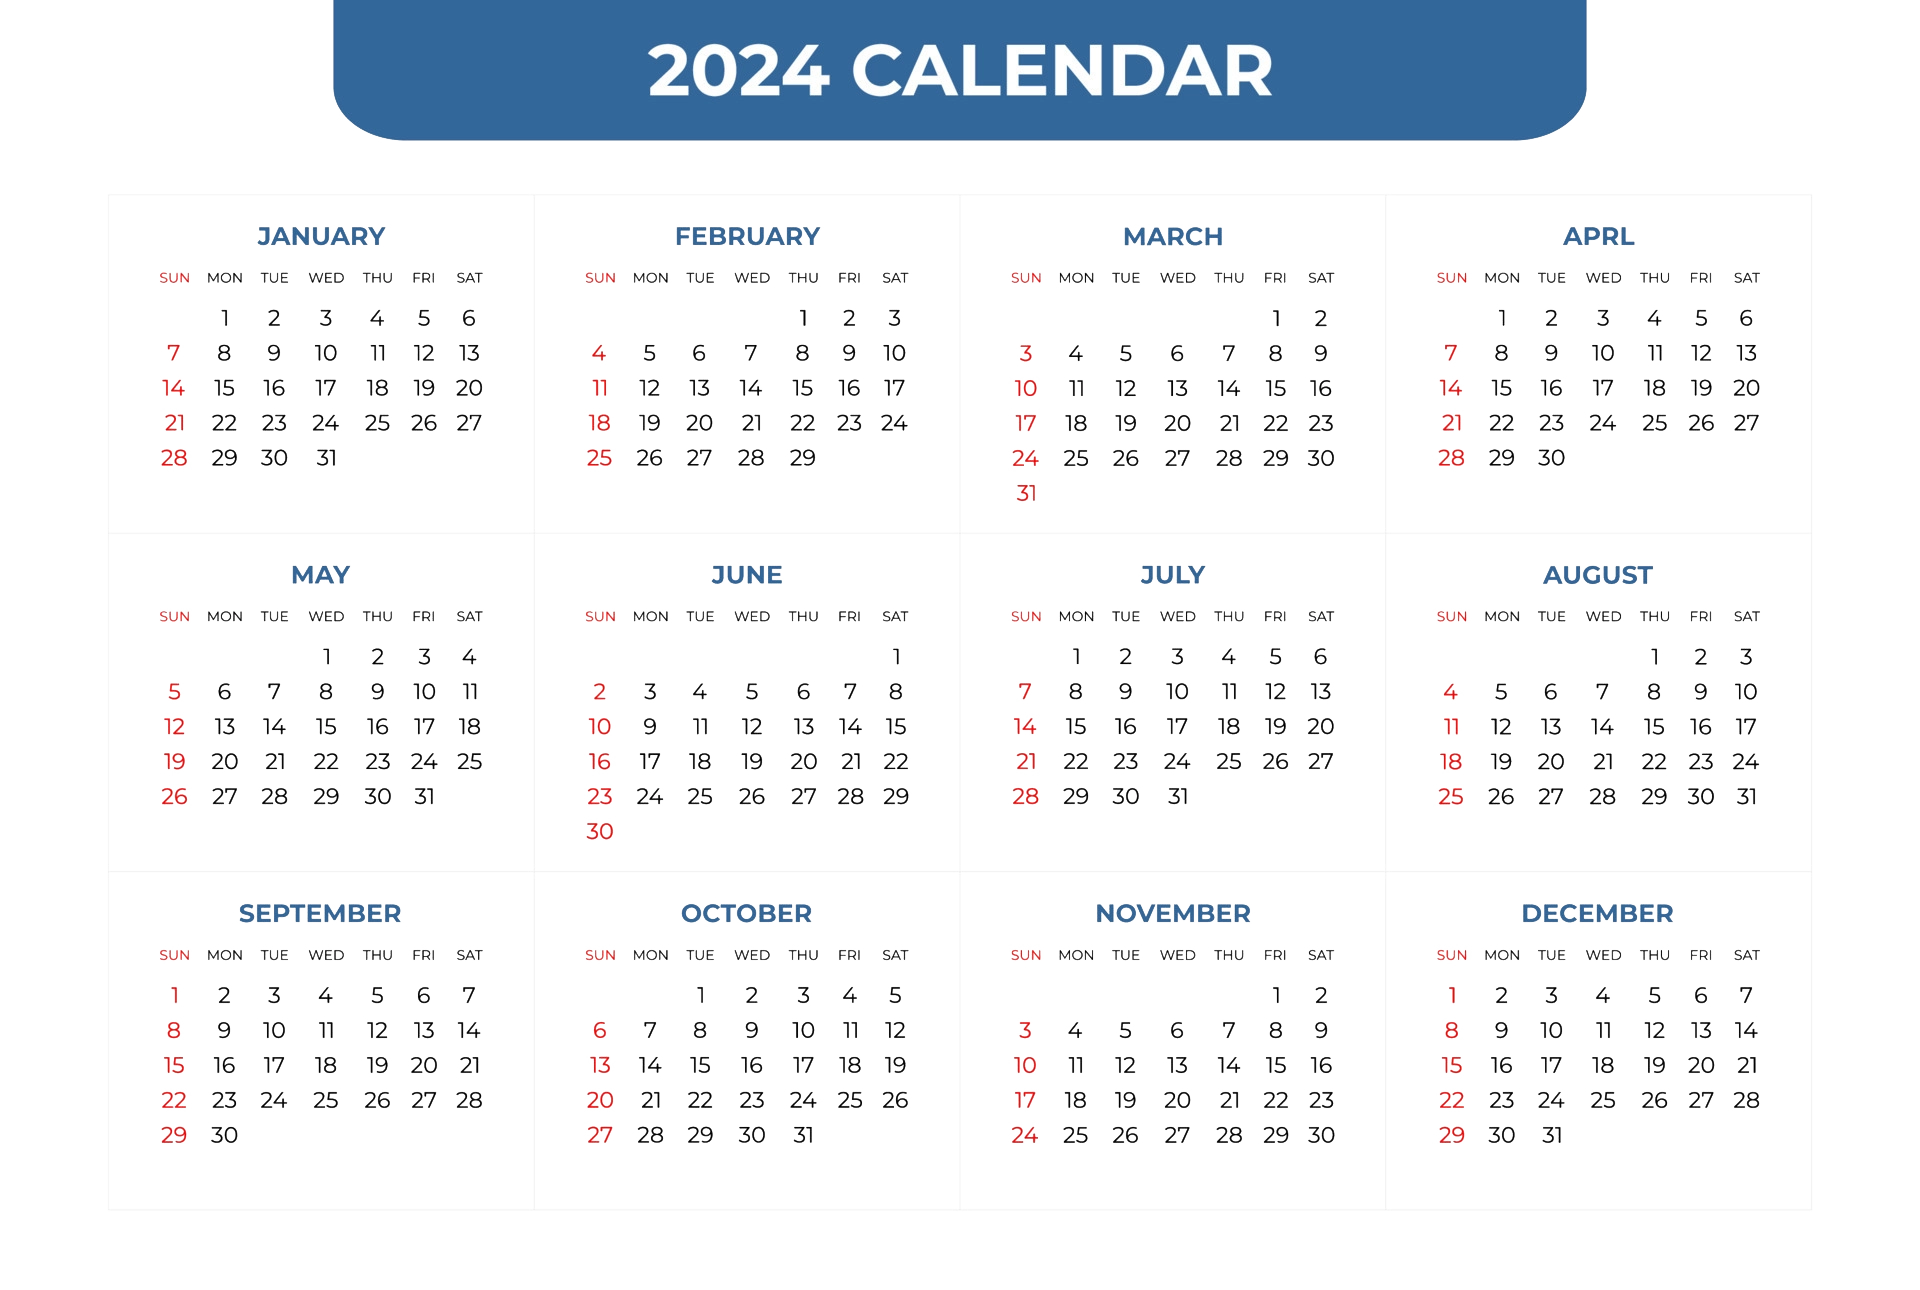 Календарь герои 2024. Календарь 2024. Календарь 2024 года. Календарь на 2024 год посмотреть. Бухгалтерский календарь 2024.